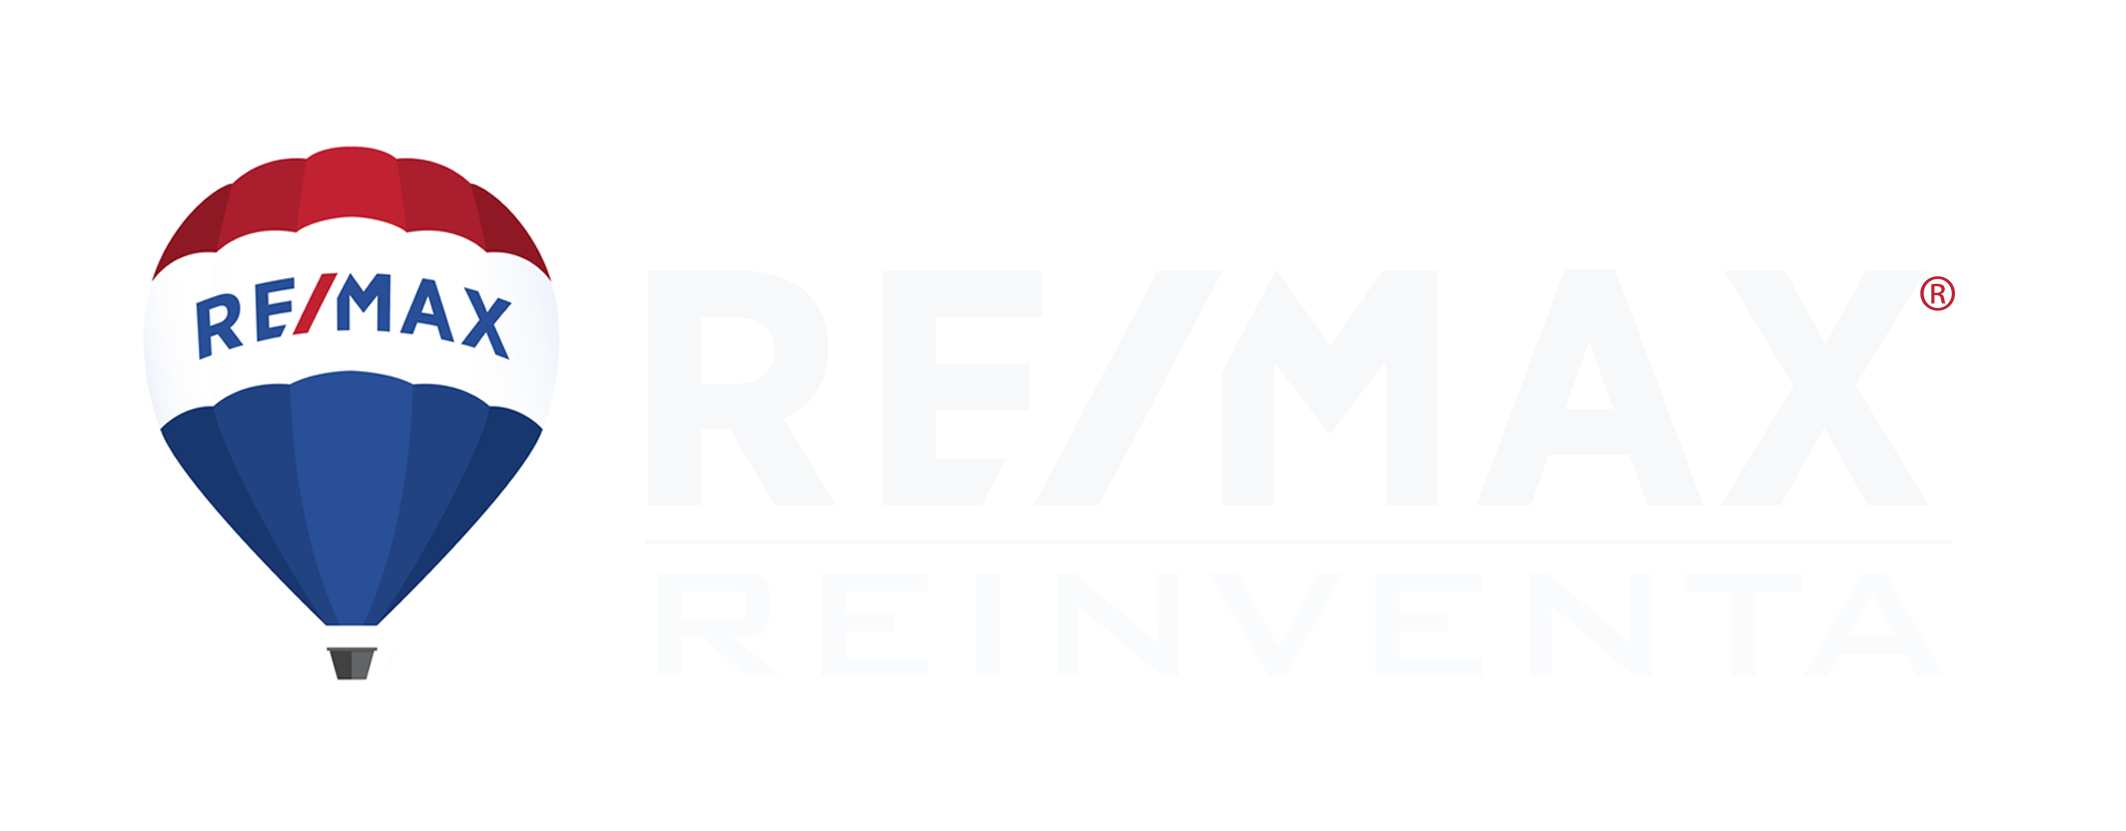 Remax Reinventa-Remax Reinventa